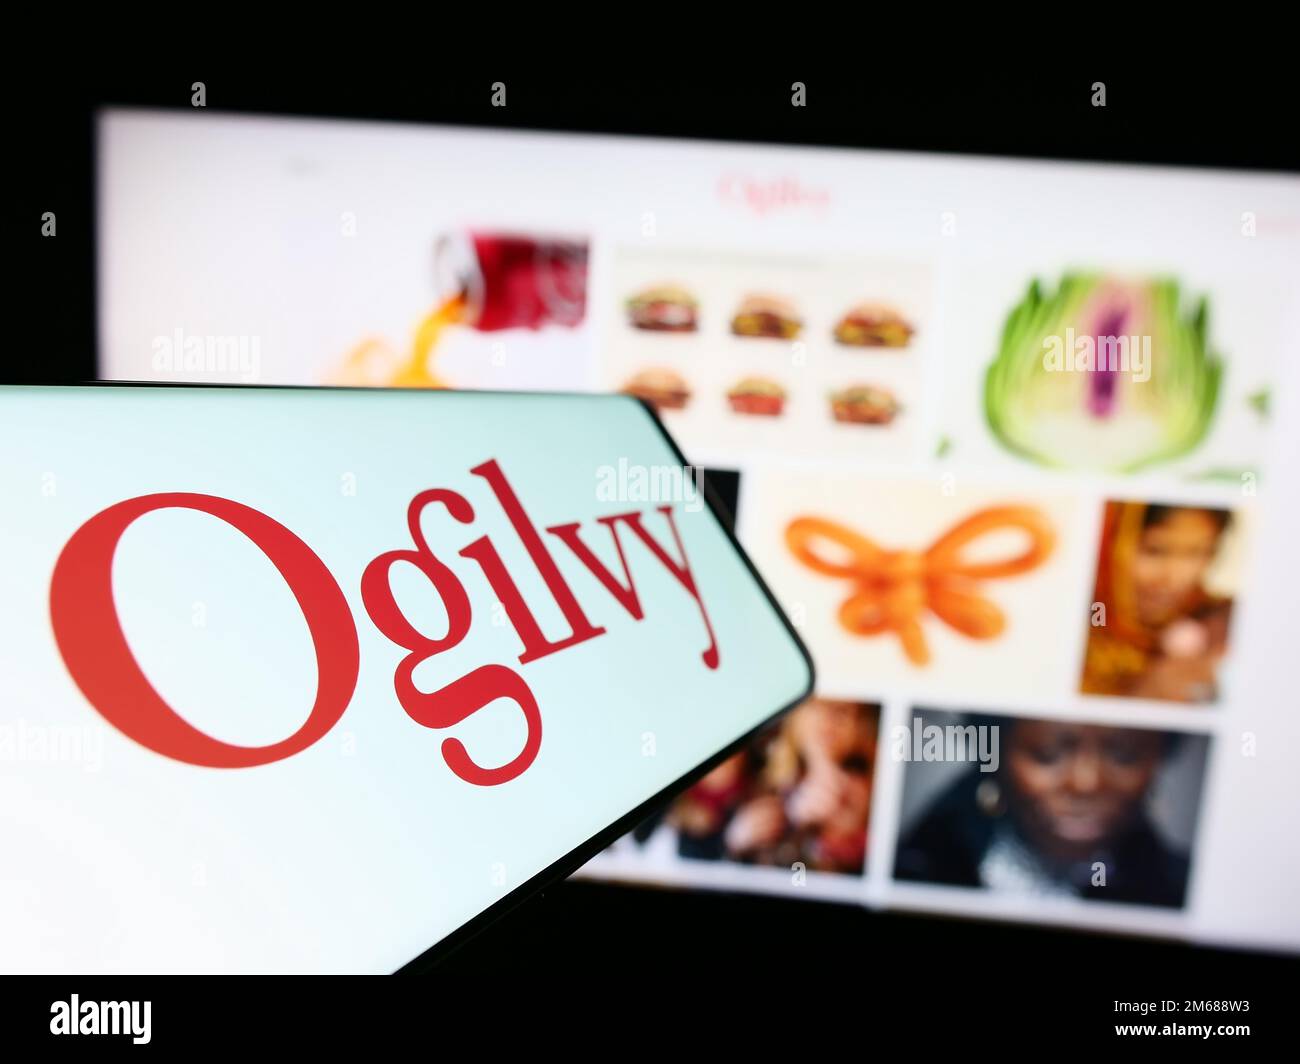 Smartphone con il logo della società di pubblicità Ogilvy sullo schermo di fronte al sito Web aziendale. Messa a fuoco al centro a sinistra del display del telefono. Foto Stock